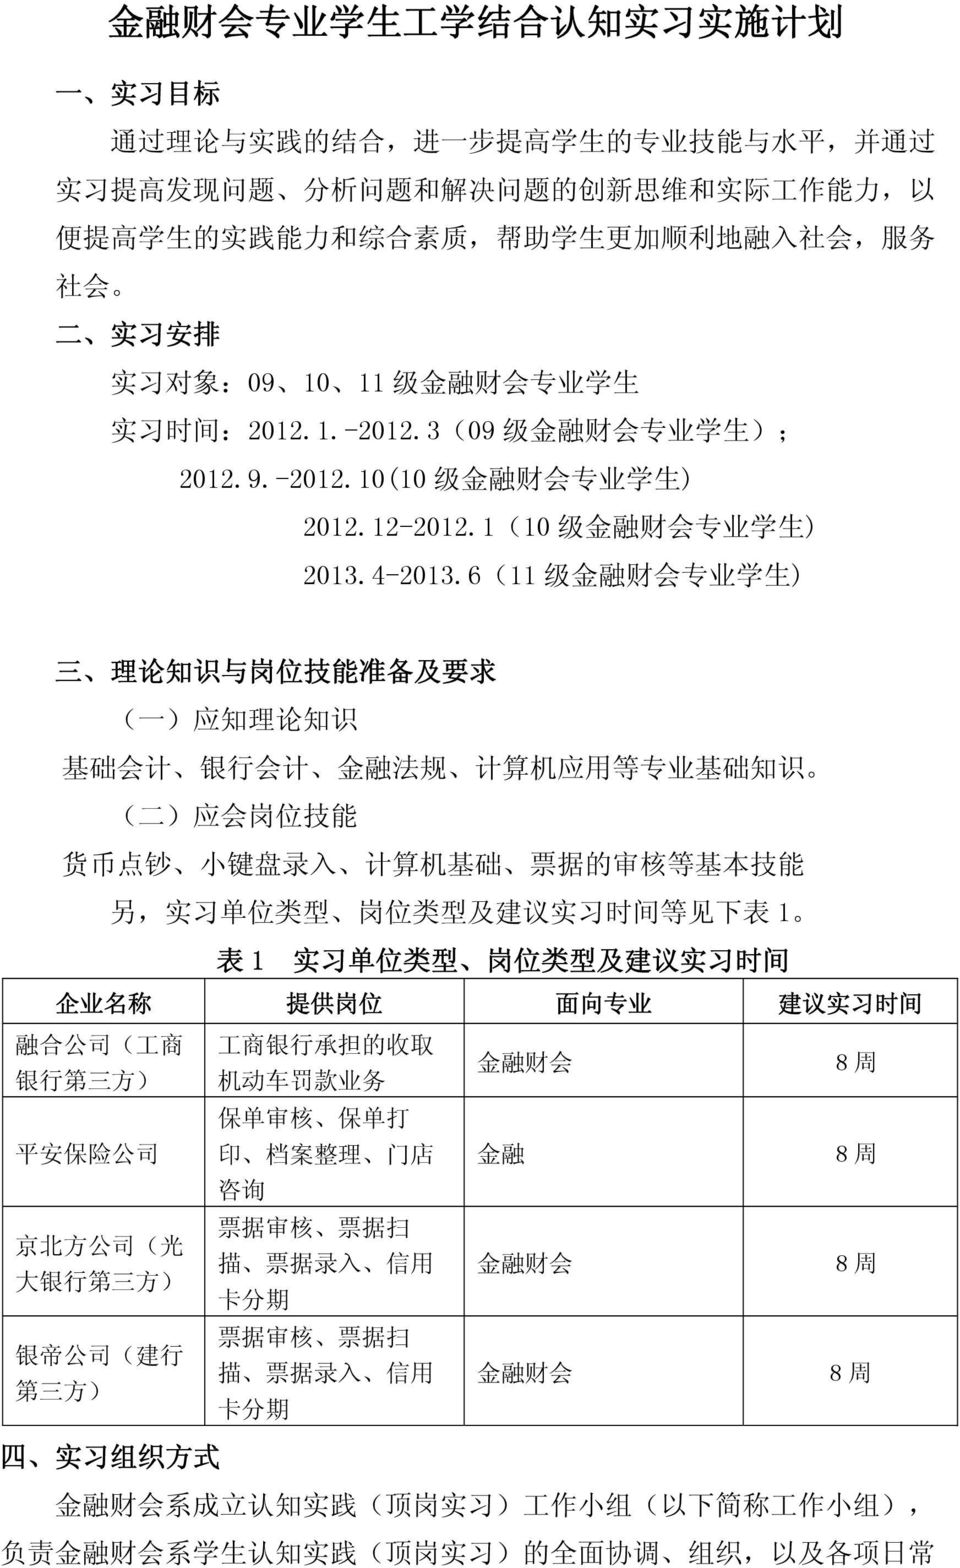 1(10 级 金 融 财 会 专 业 学 生 ) 2013.4-2013.